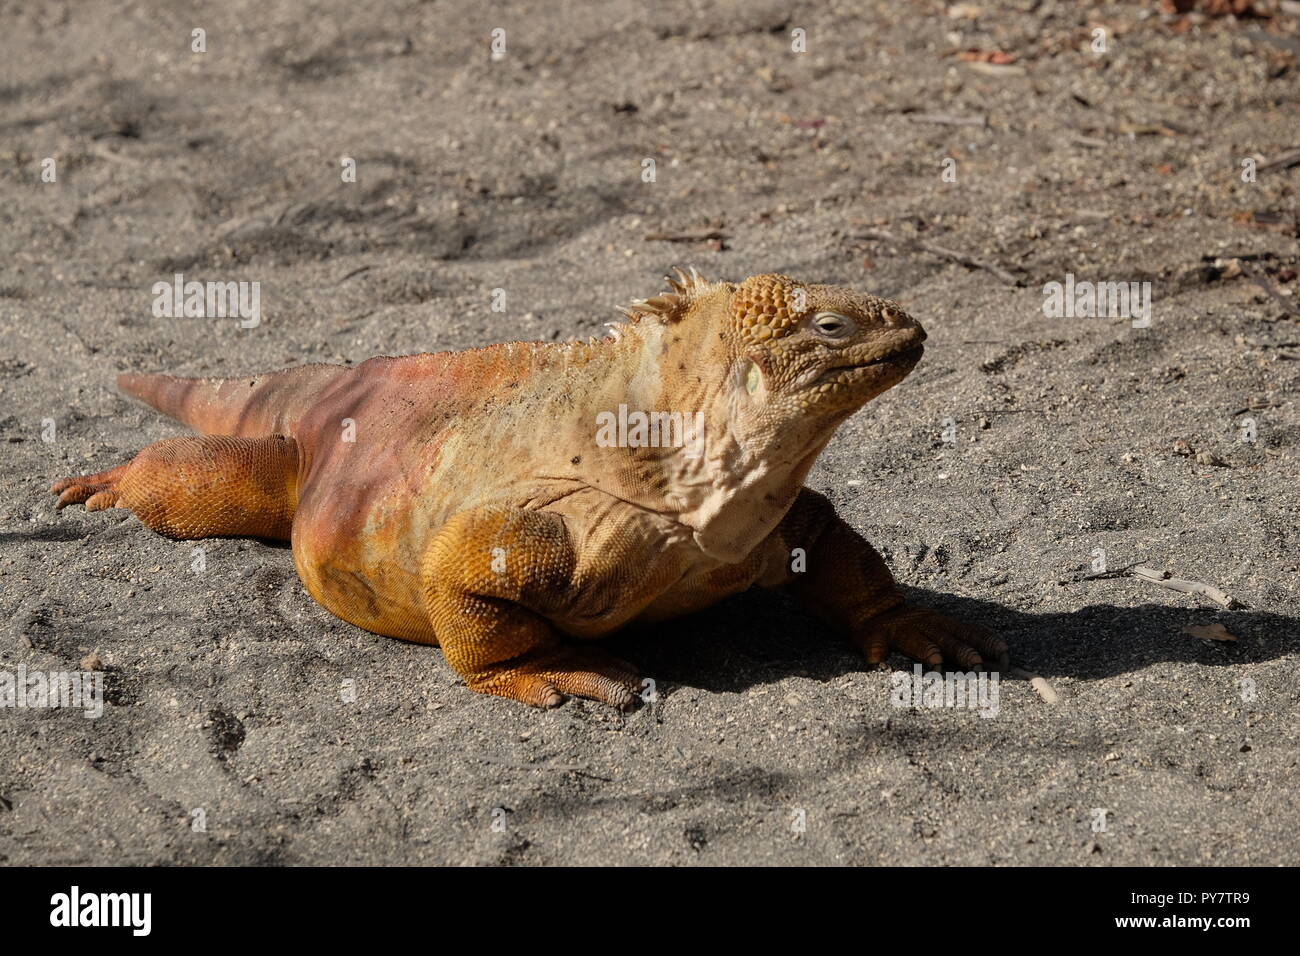 Large orange iguana on a sandy beach, Galapagos Island Stock Photo